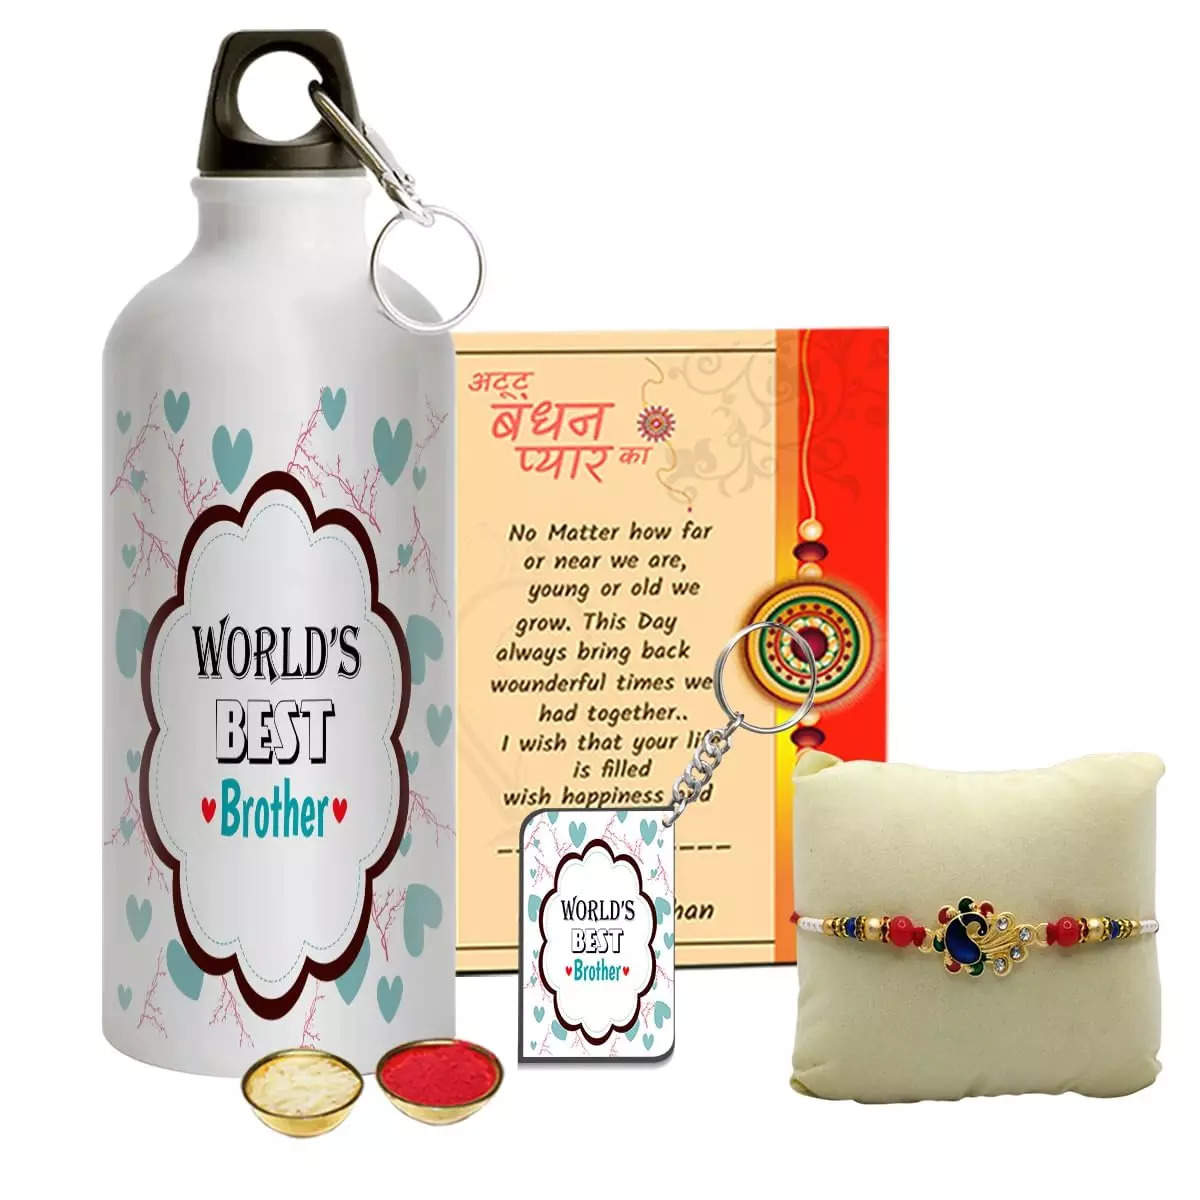 Diwali Gifts Under 500 | Diwali Gift Ideas Under 500 Rupees